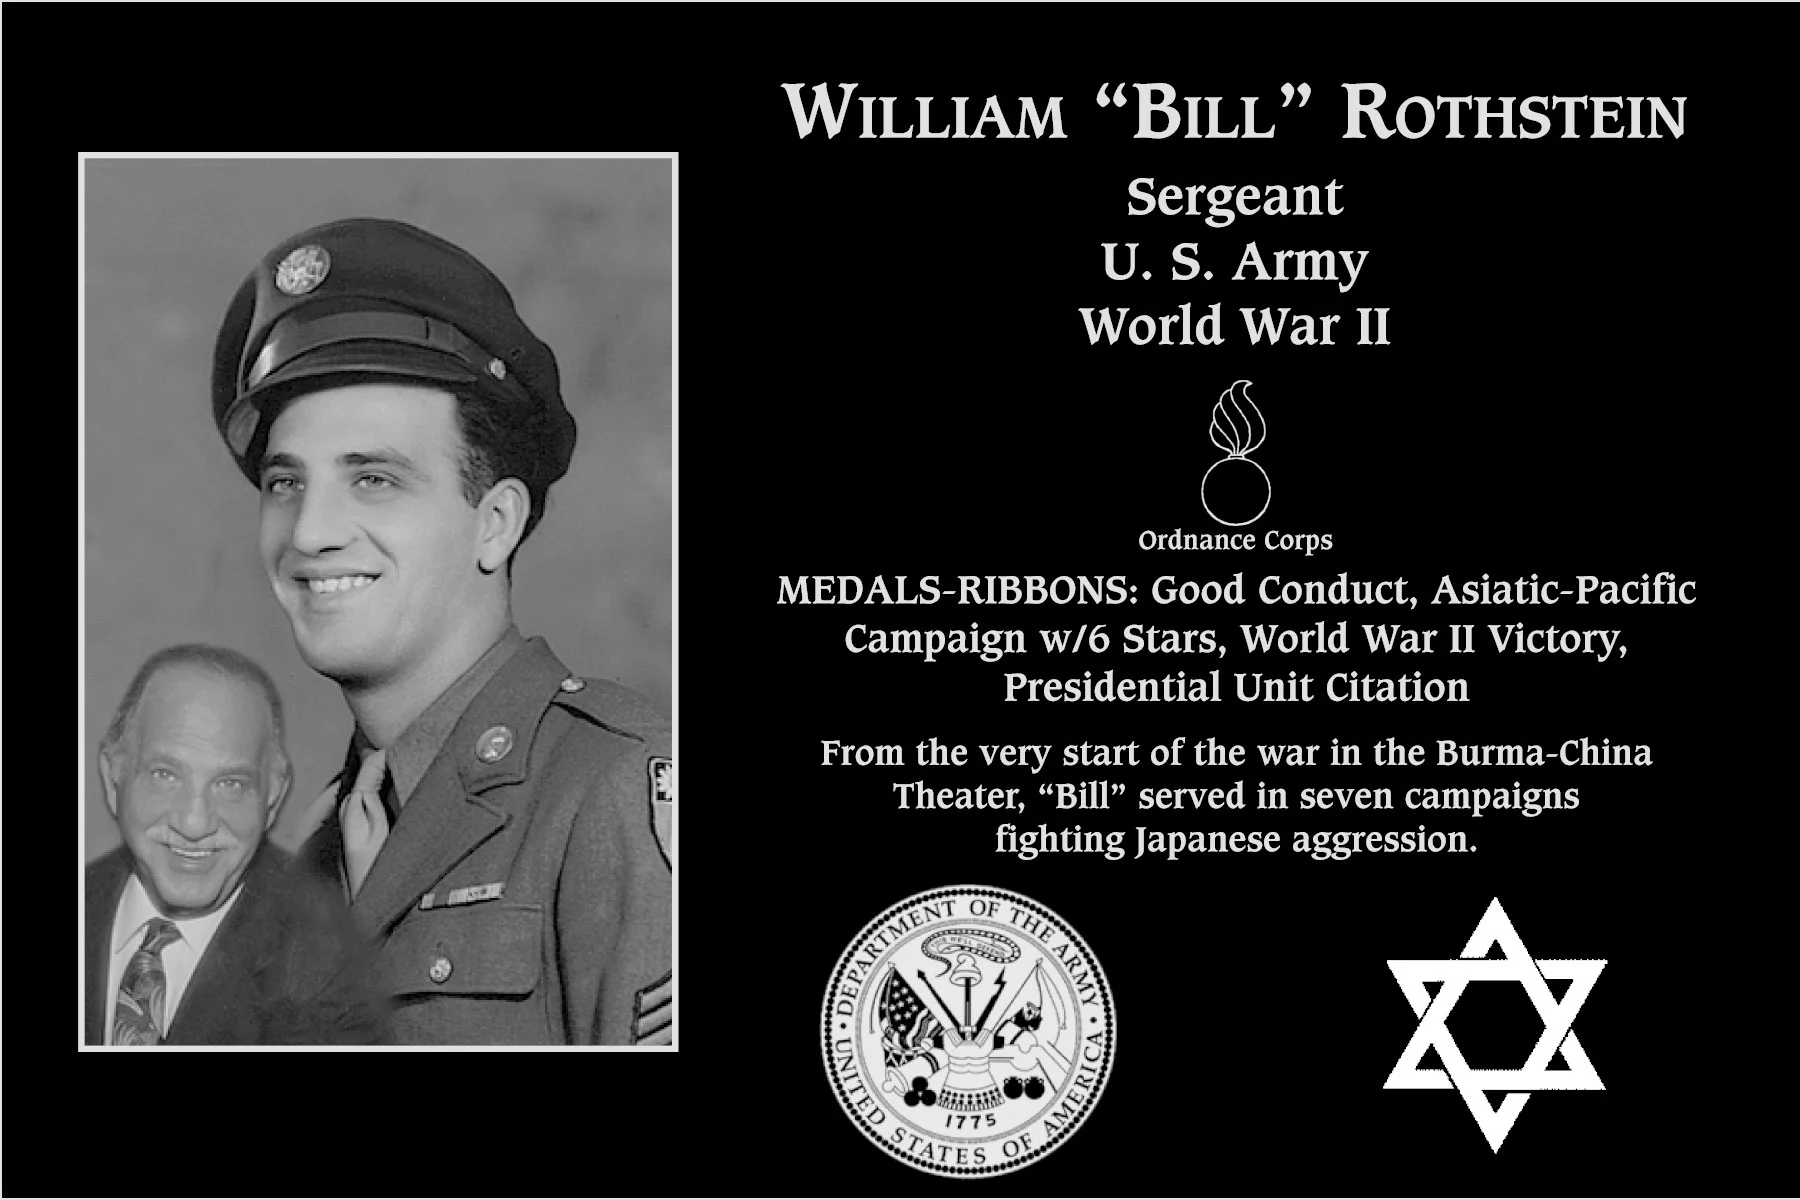 William “Bill” Rothstein